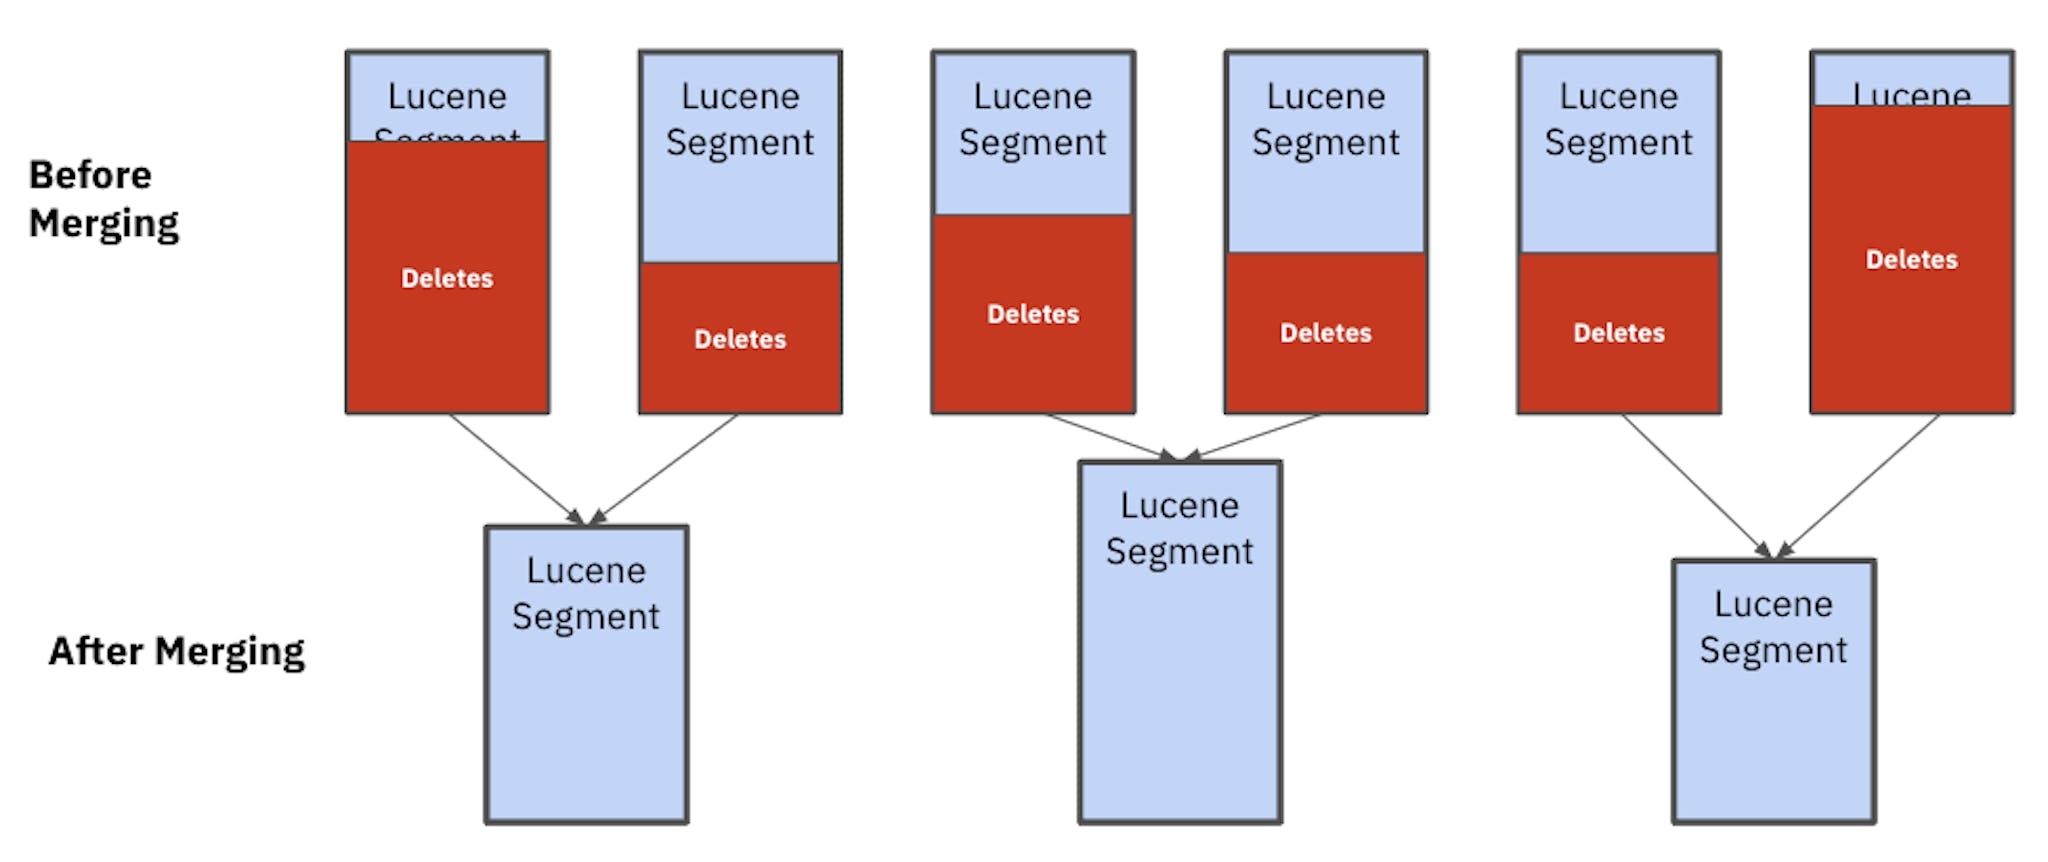 Birleştirme sonrasında Lucene segmentlerinin hepsinin farklı boyutlarda olduğunu görebilirsiniz. Bu eşit olmayan segmentler performansı ve kararlılığı etkiler